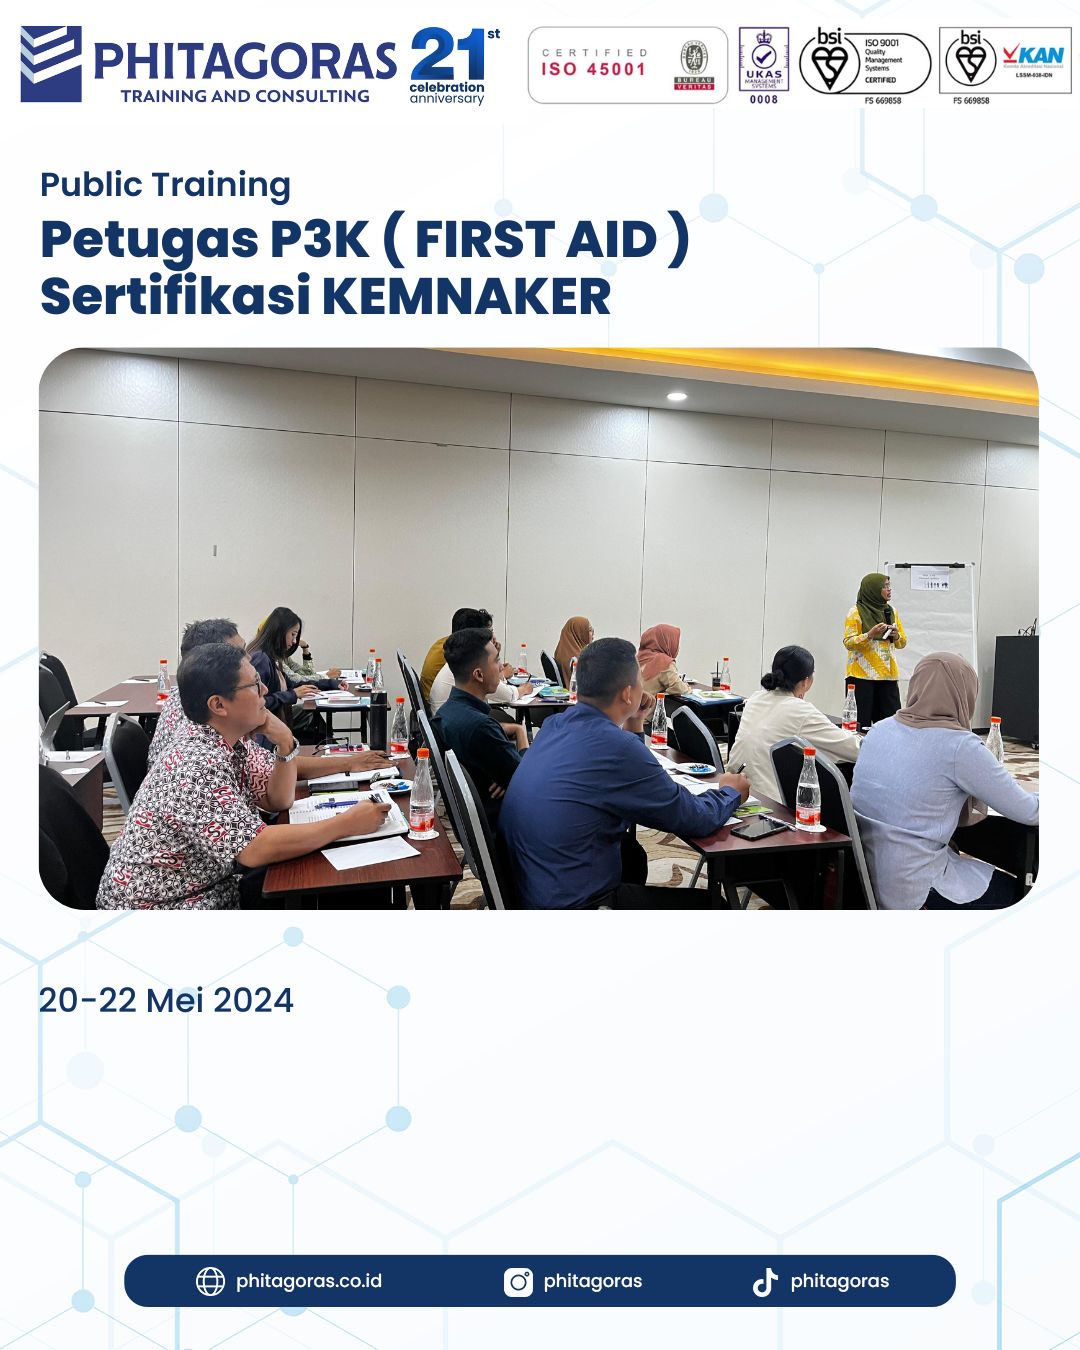 Public Training Petugas P3K (First Aid) Sertifikasi KEMNAKER 20-22 Mei 2024